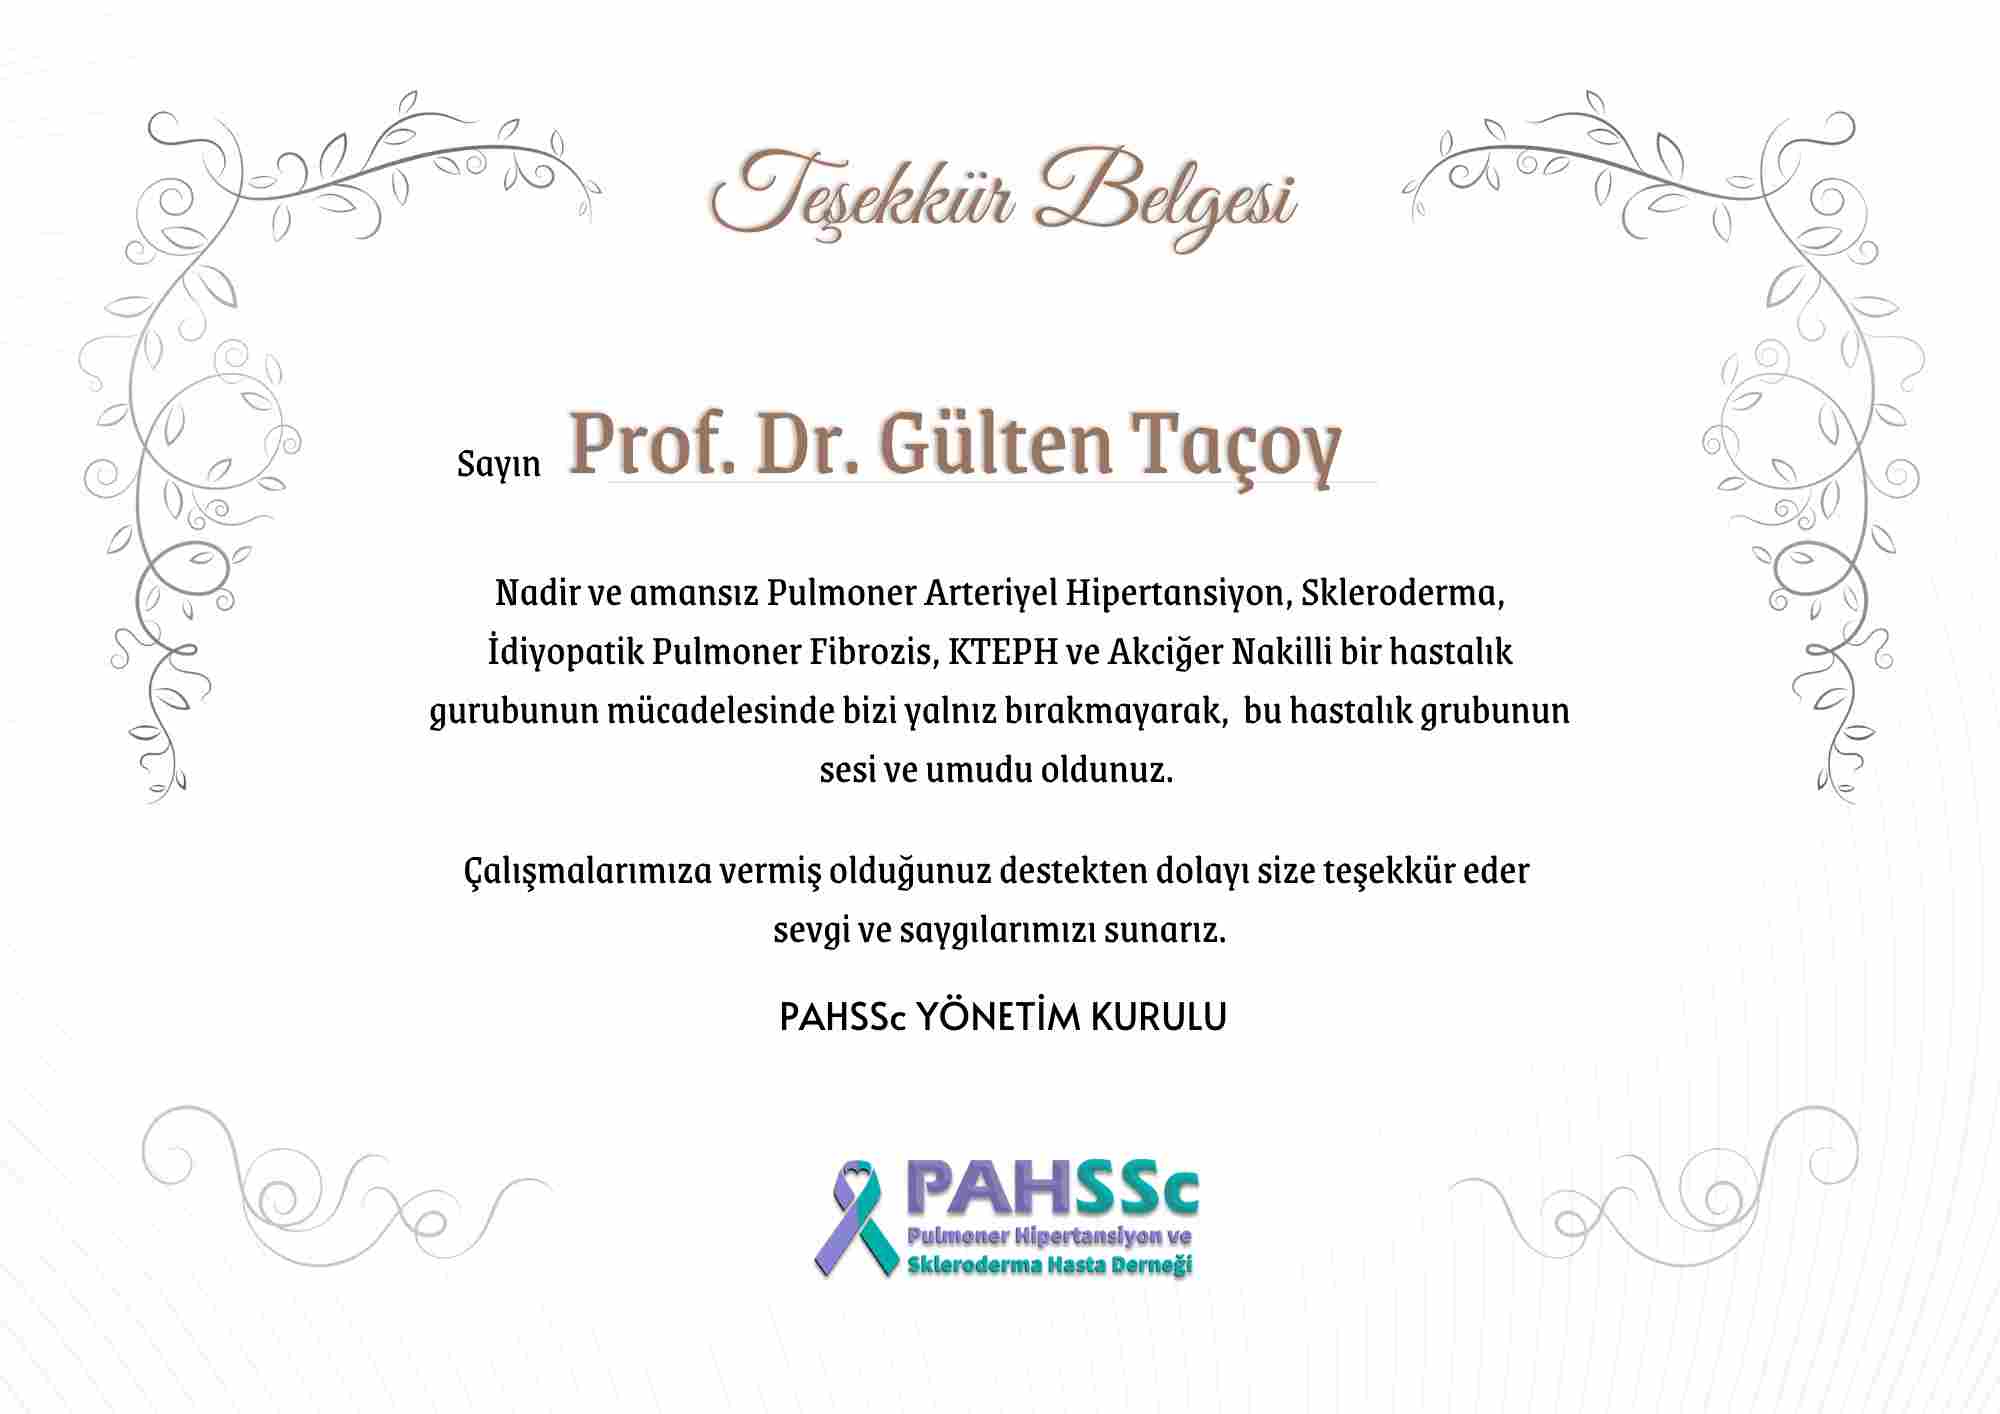 Prof. Dr. Gülten Taçoy